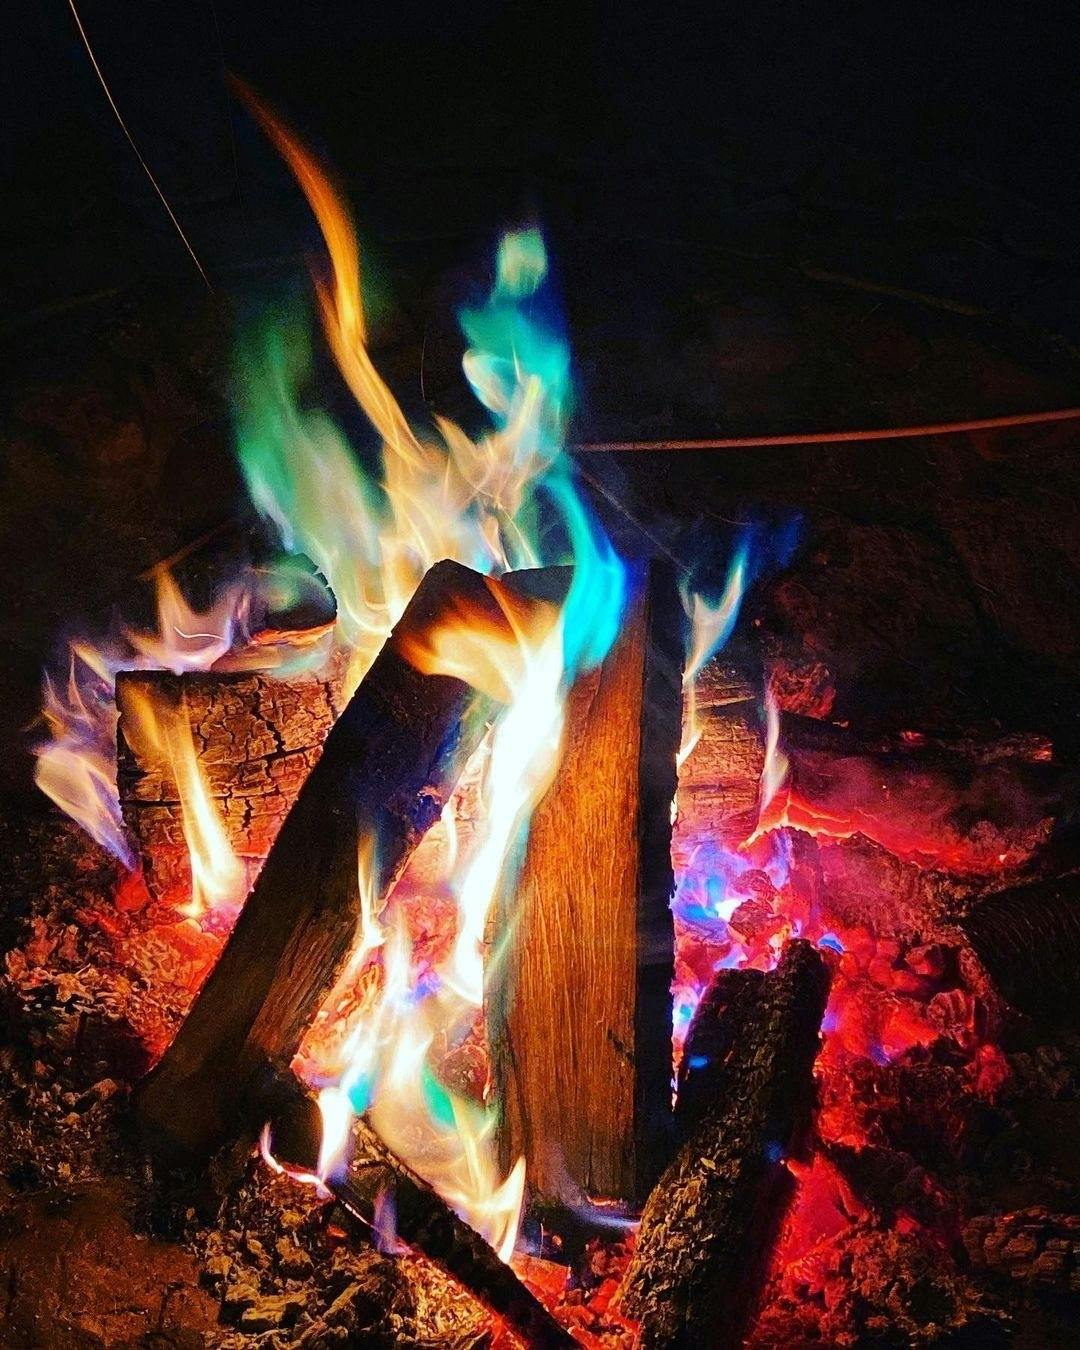 焚き火を彩るレインボーMagic Fire(マジックファイヤー) - CAMPFIRE